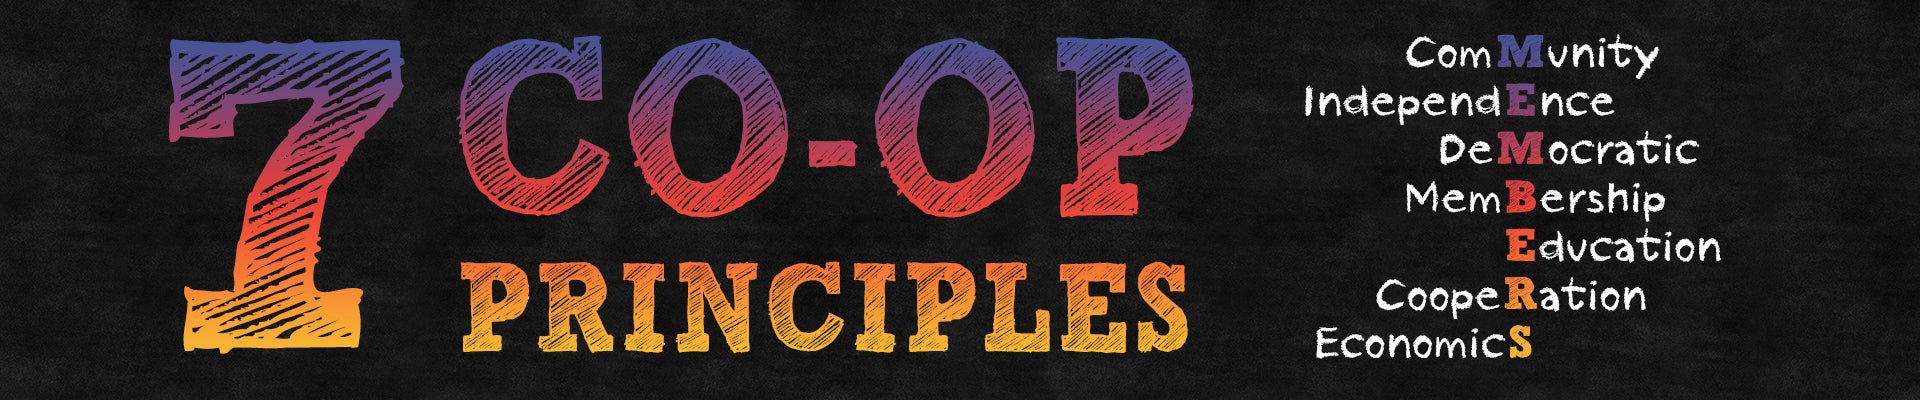 7 Co-op Principles